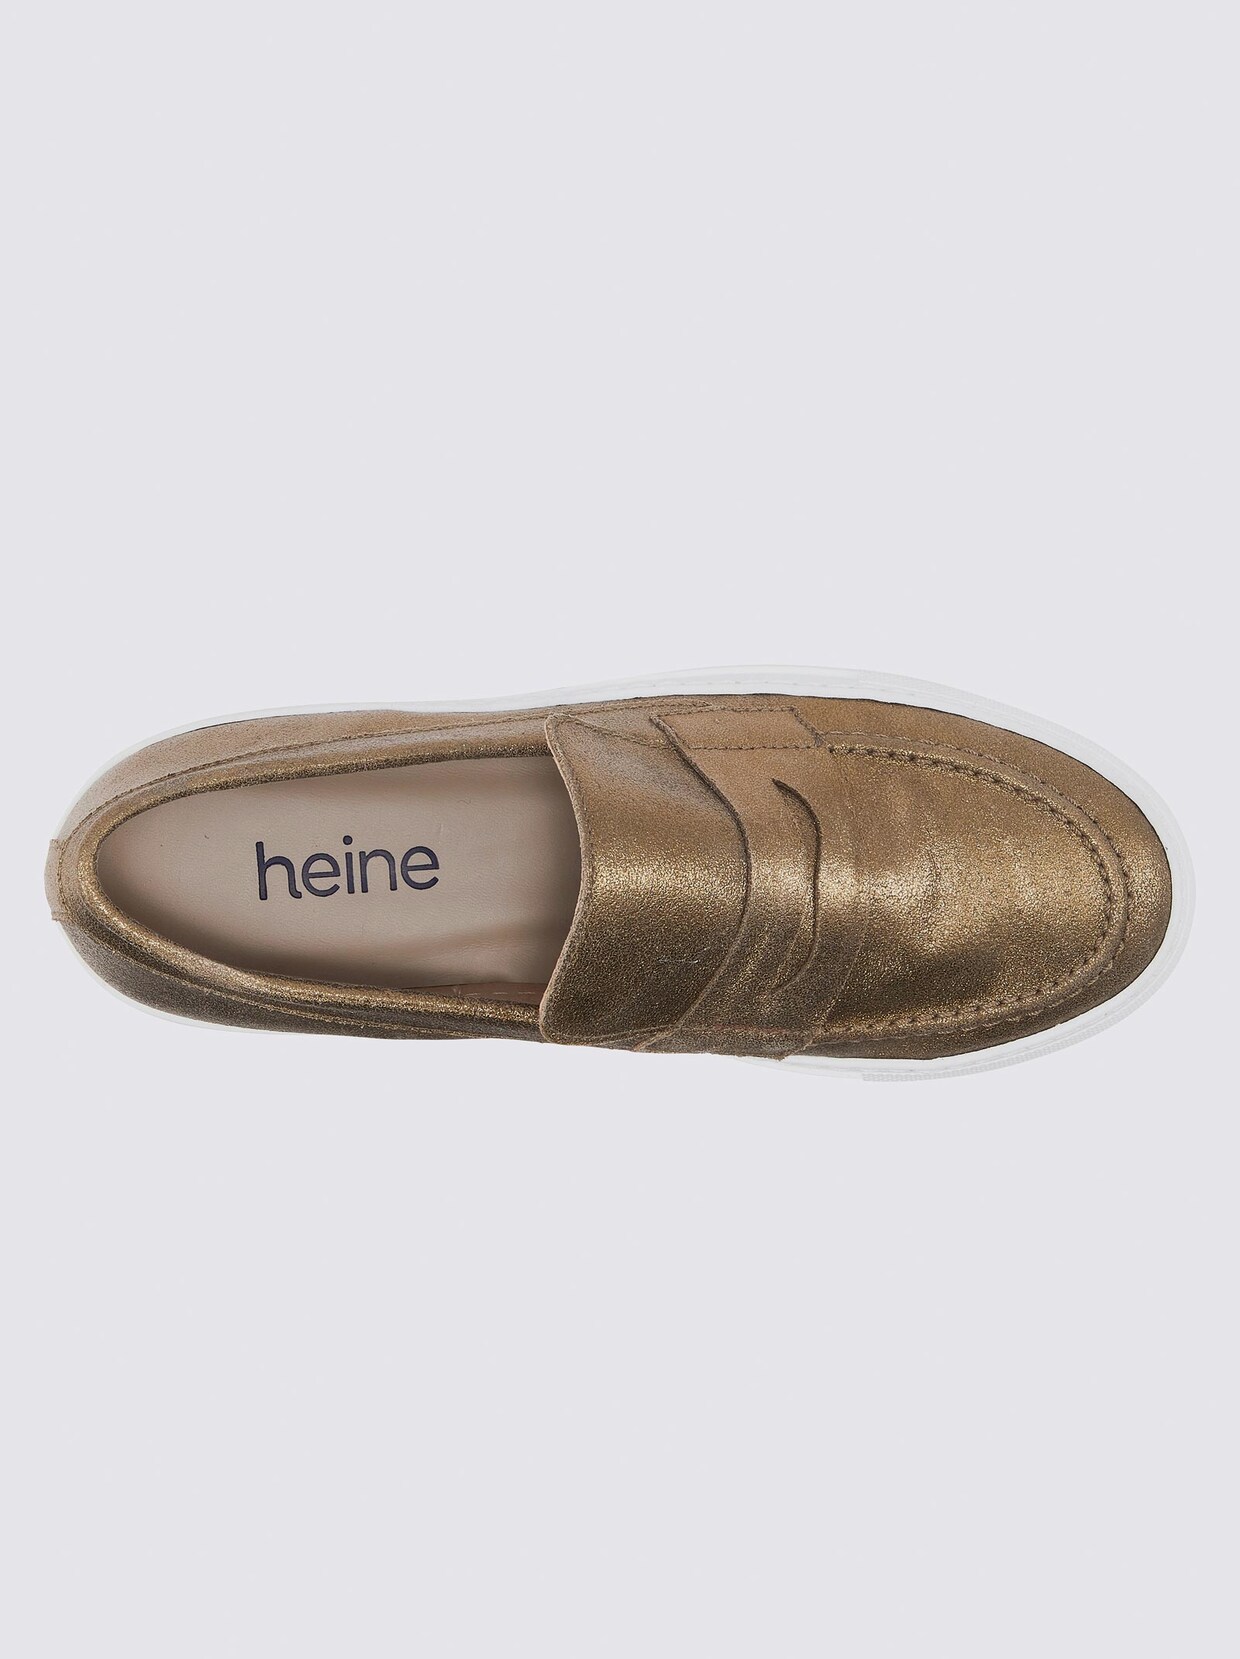 heine Slipper - khaki-metallic